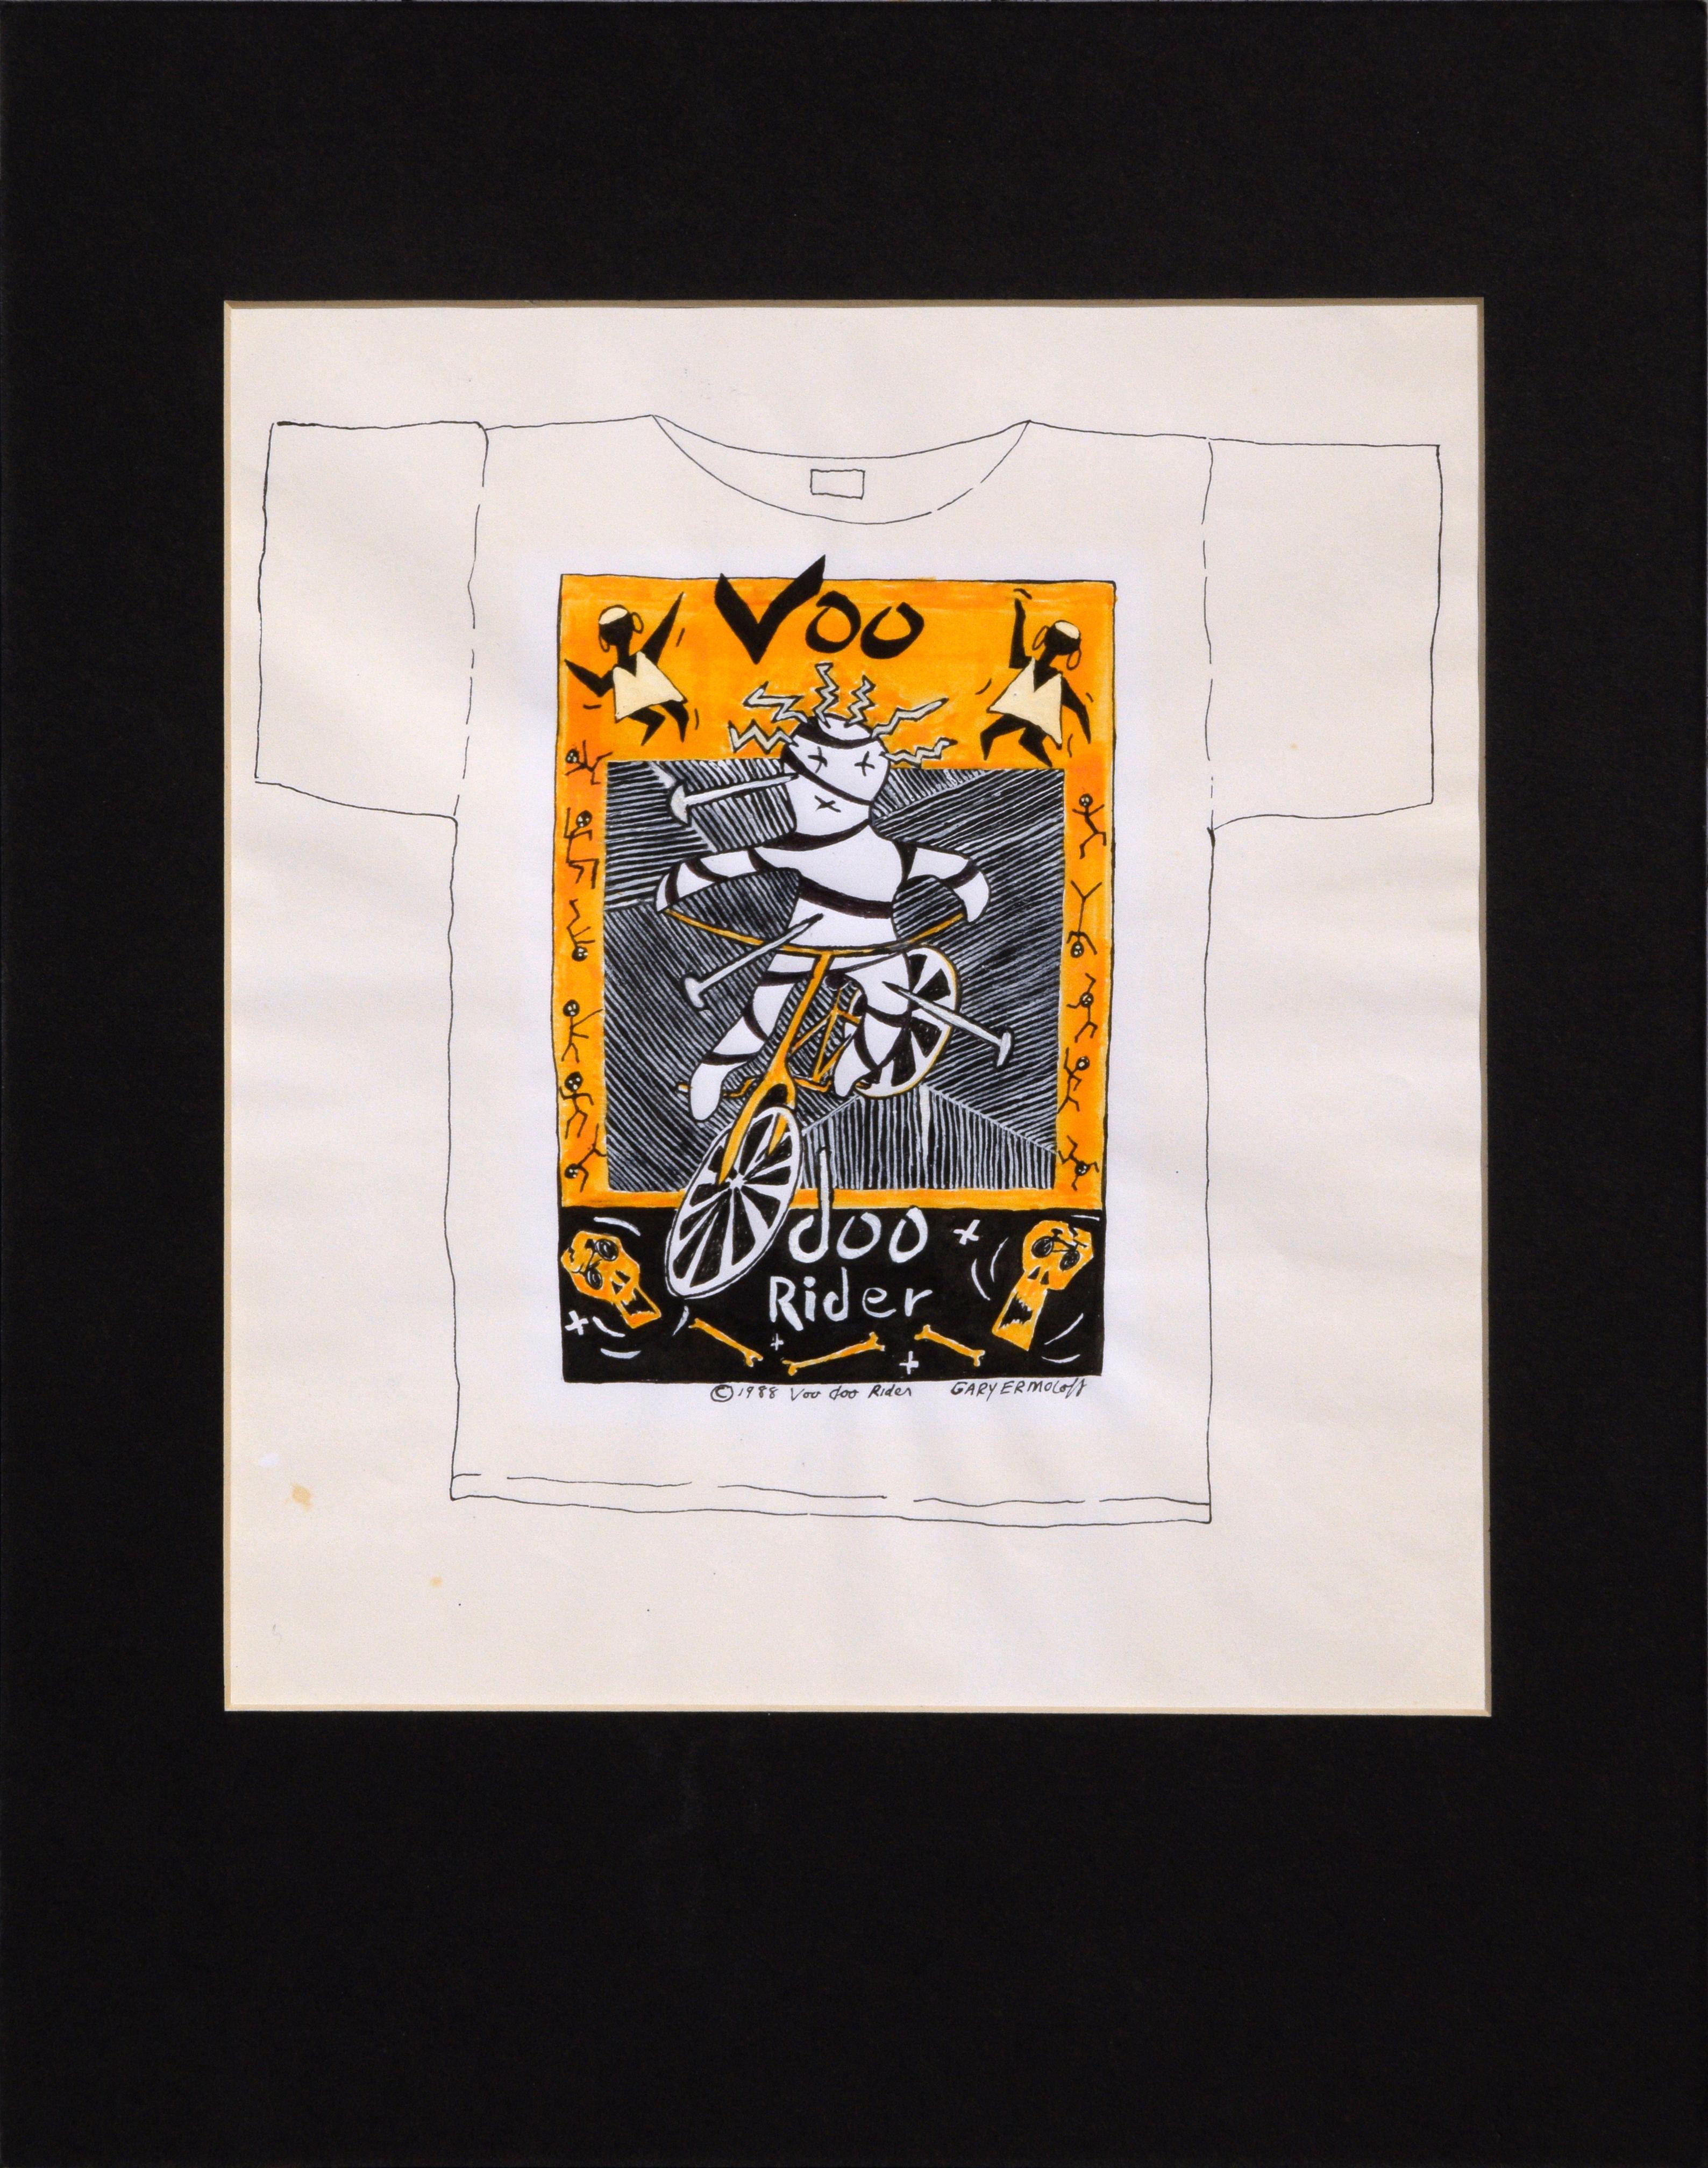 Gary Ermoloff Figurative Painting – Original Voodoo Rider Original 1980er T-Shirt Design Zeichnung 